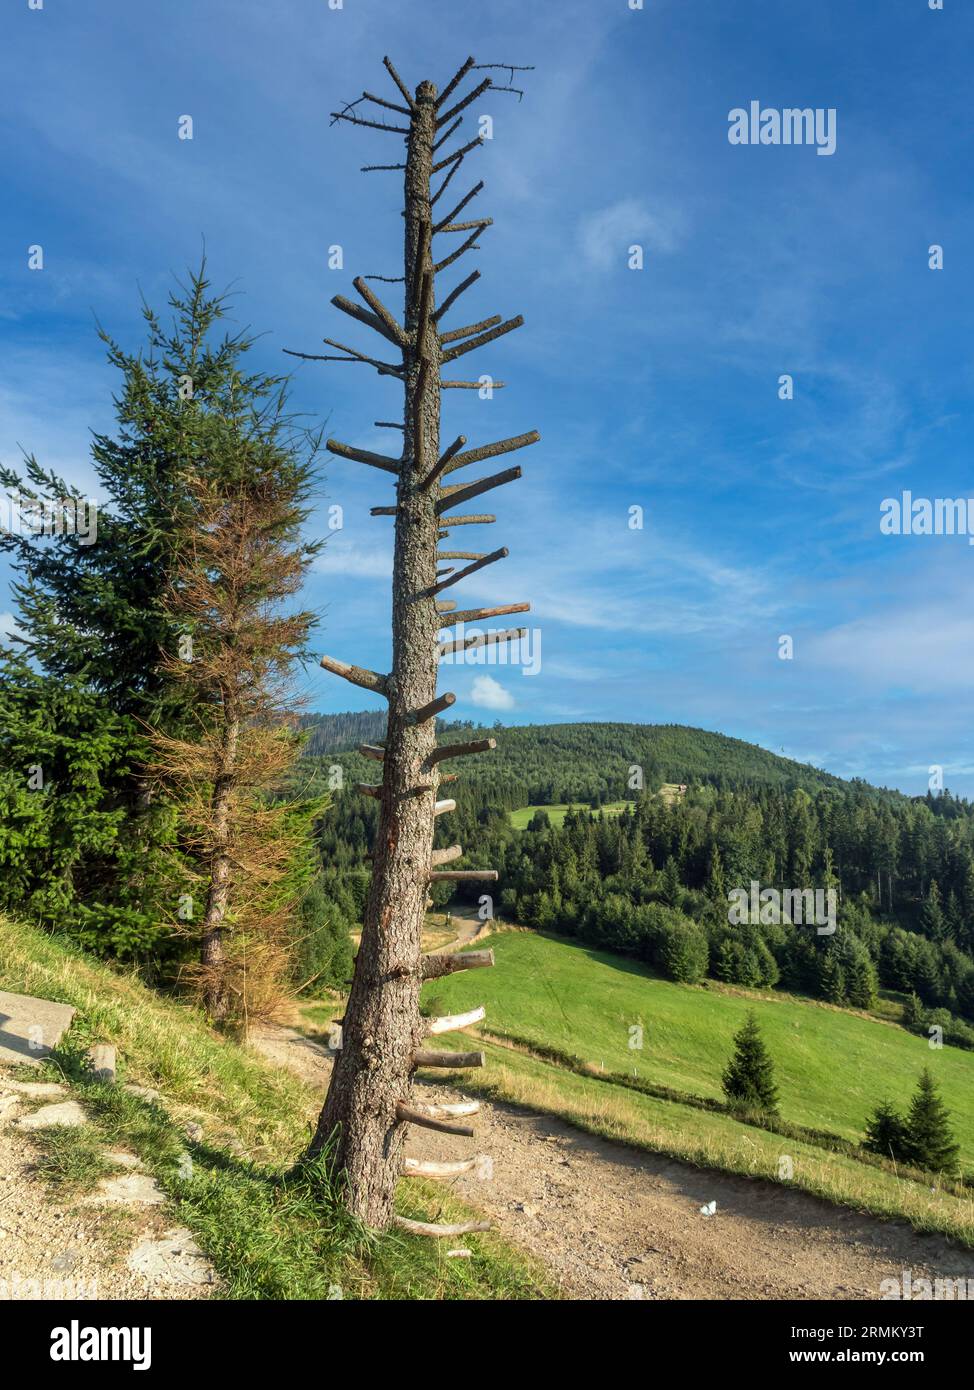 Verwelkte Fichtenstummel gegen blauen Himmel - Beskid Zywiecki, Polen Stockfoto